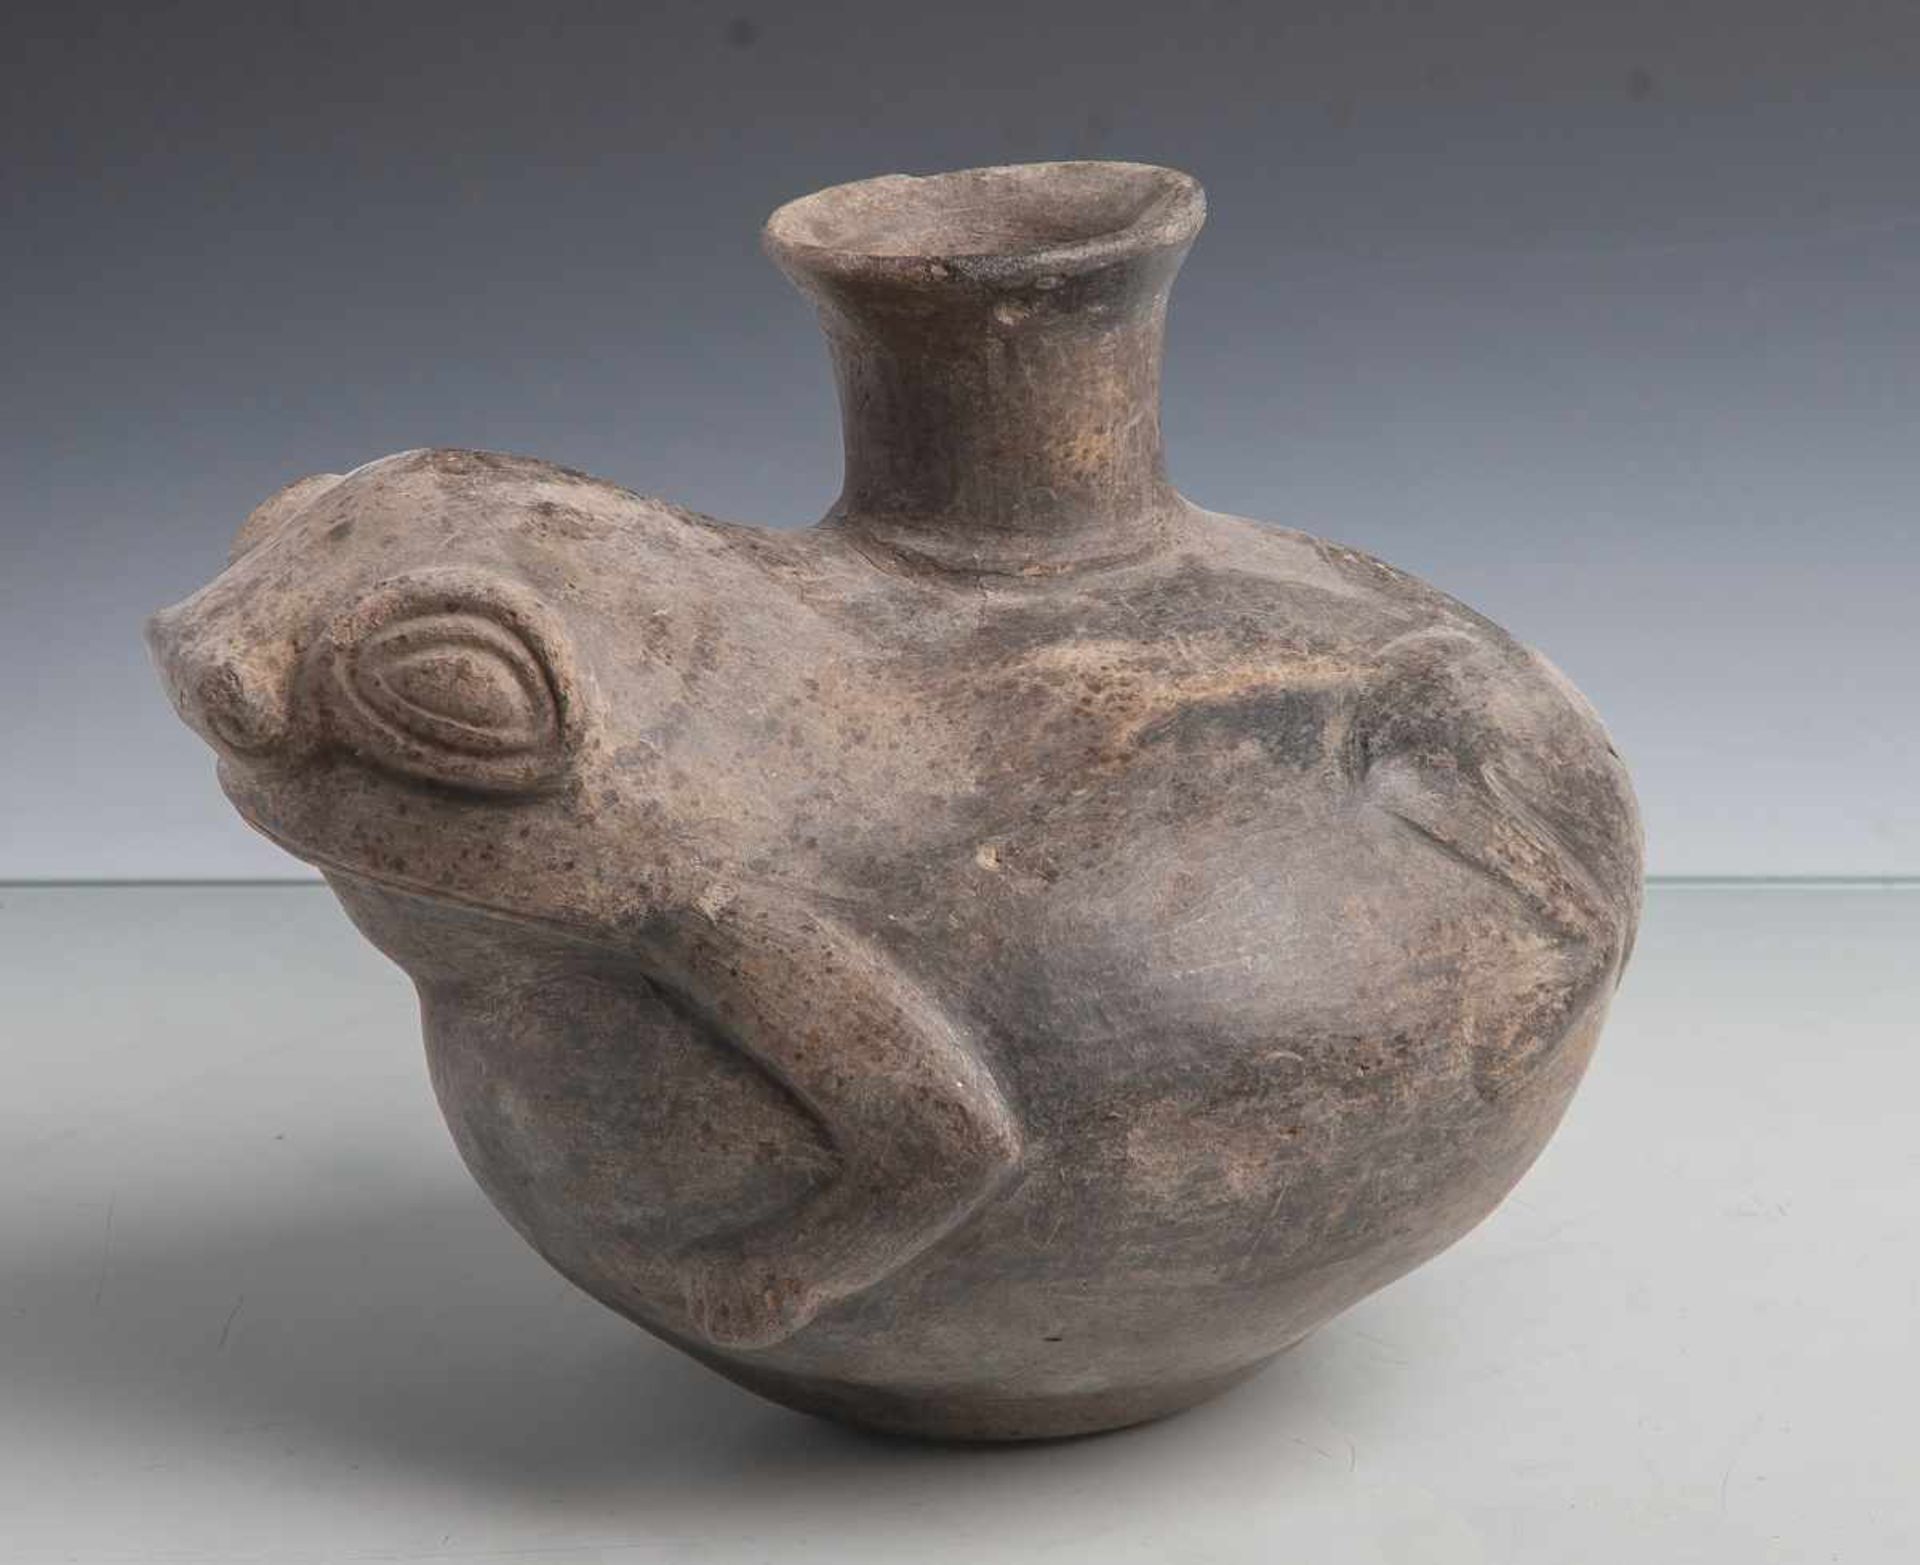 Figurengefäß in Form einer Kröte (Peru, Chimú-Kultur), oben auf dem Rückentrichterförmiger